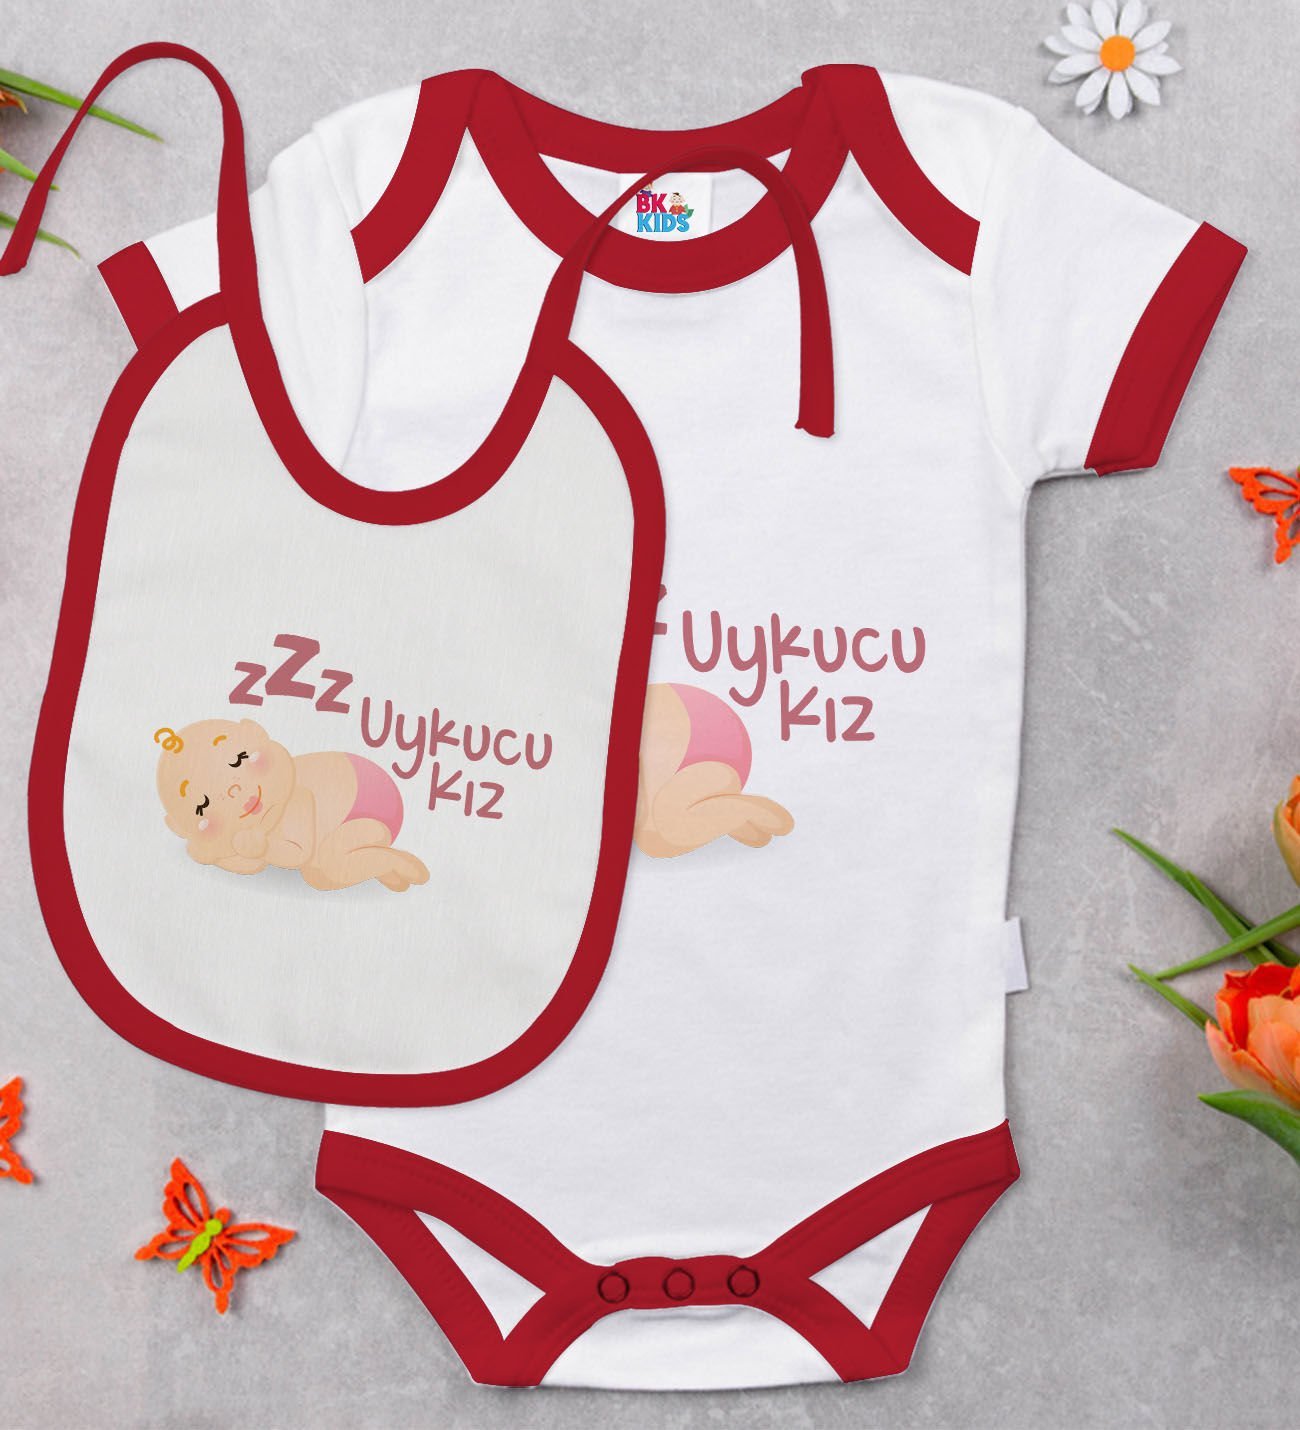 BK Kids Uykucu Kız Tasarımlı Kırmızı Bebek Body Zıbın ve Mama Önlüğü Hediye Seti-1